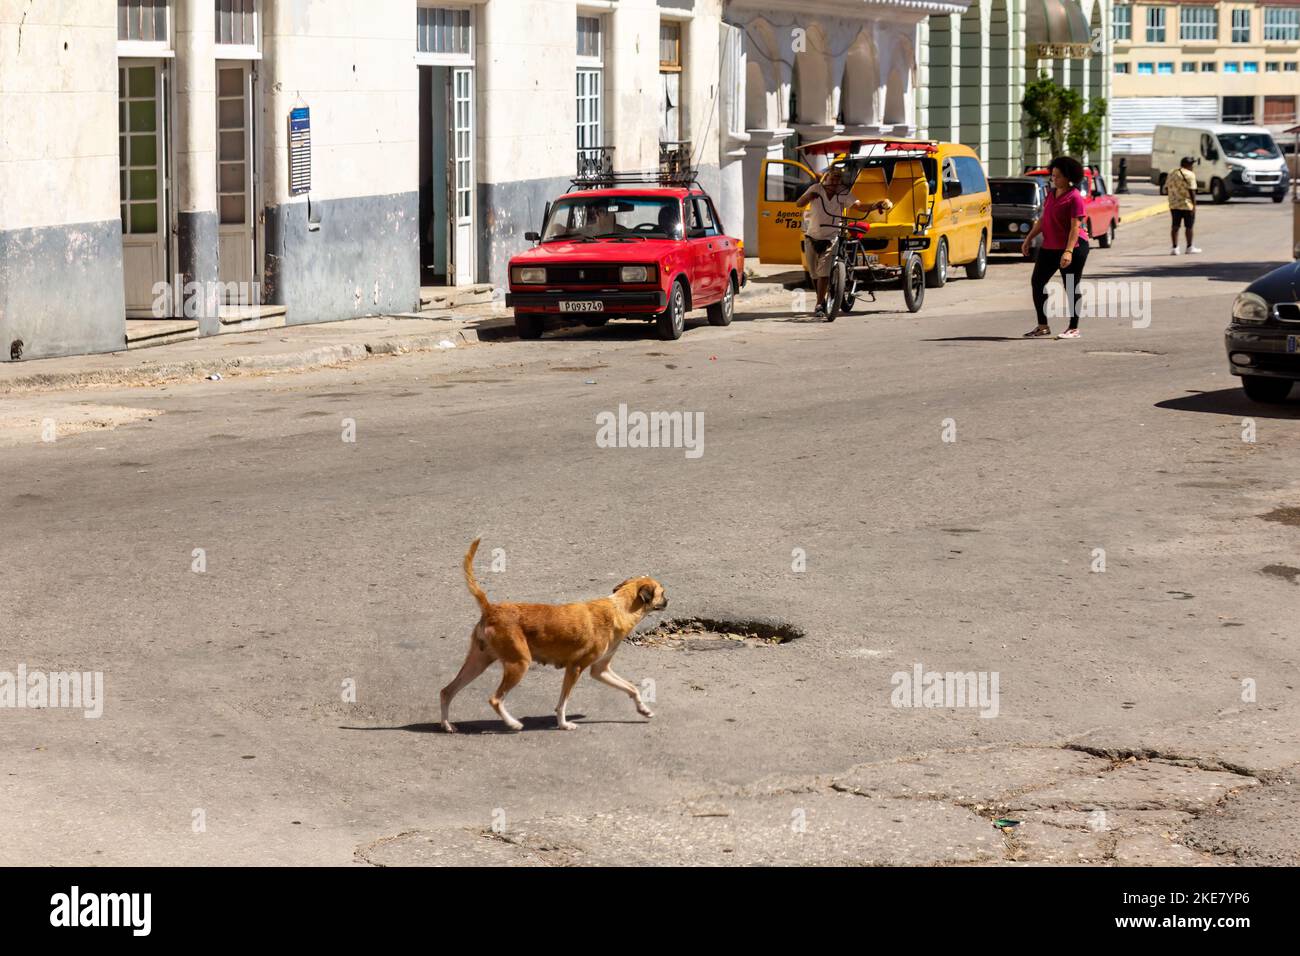 Un perro callejero camina por una calle de asfalto dañada donde hay varios vehículos estacionados Foto de stock